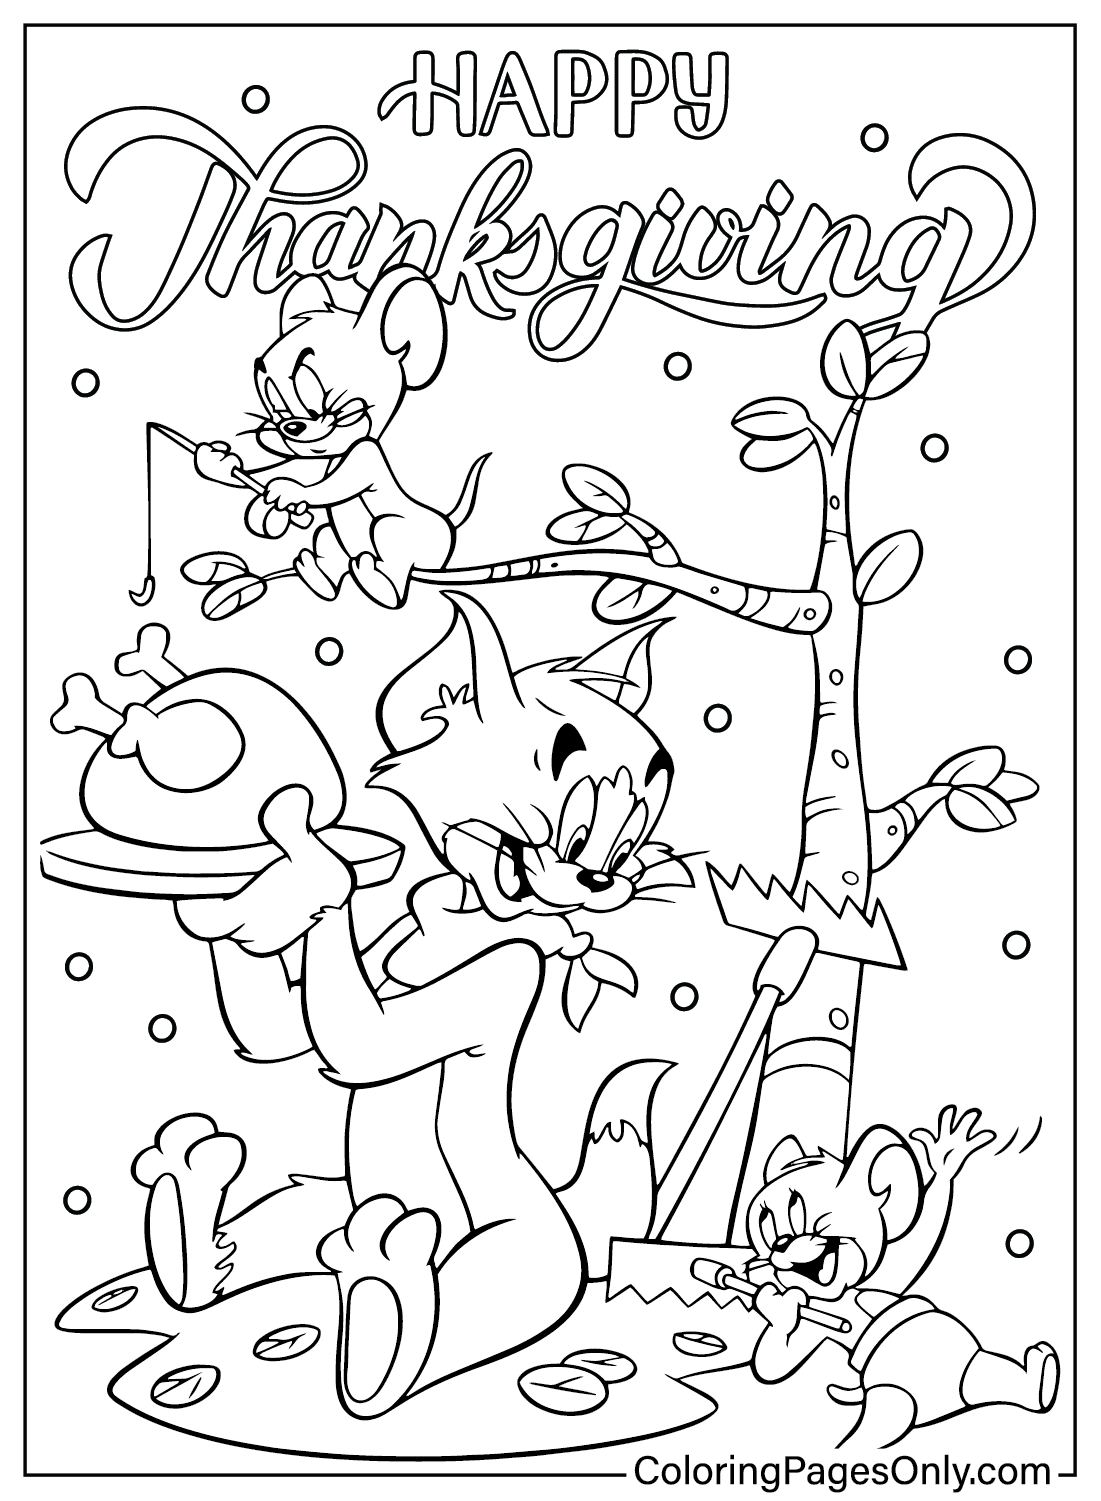 Página para colorear de Tom y Jerry de Acción de Gracias de dibujos animados de Acción de Gracias